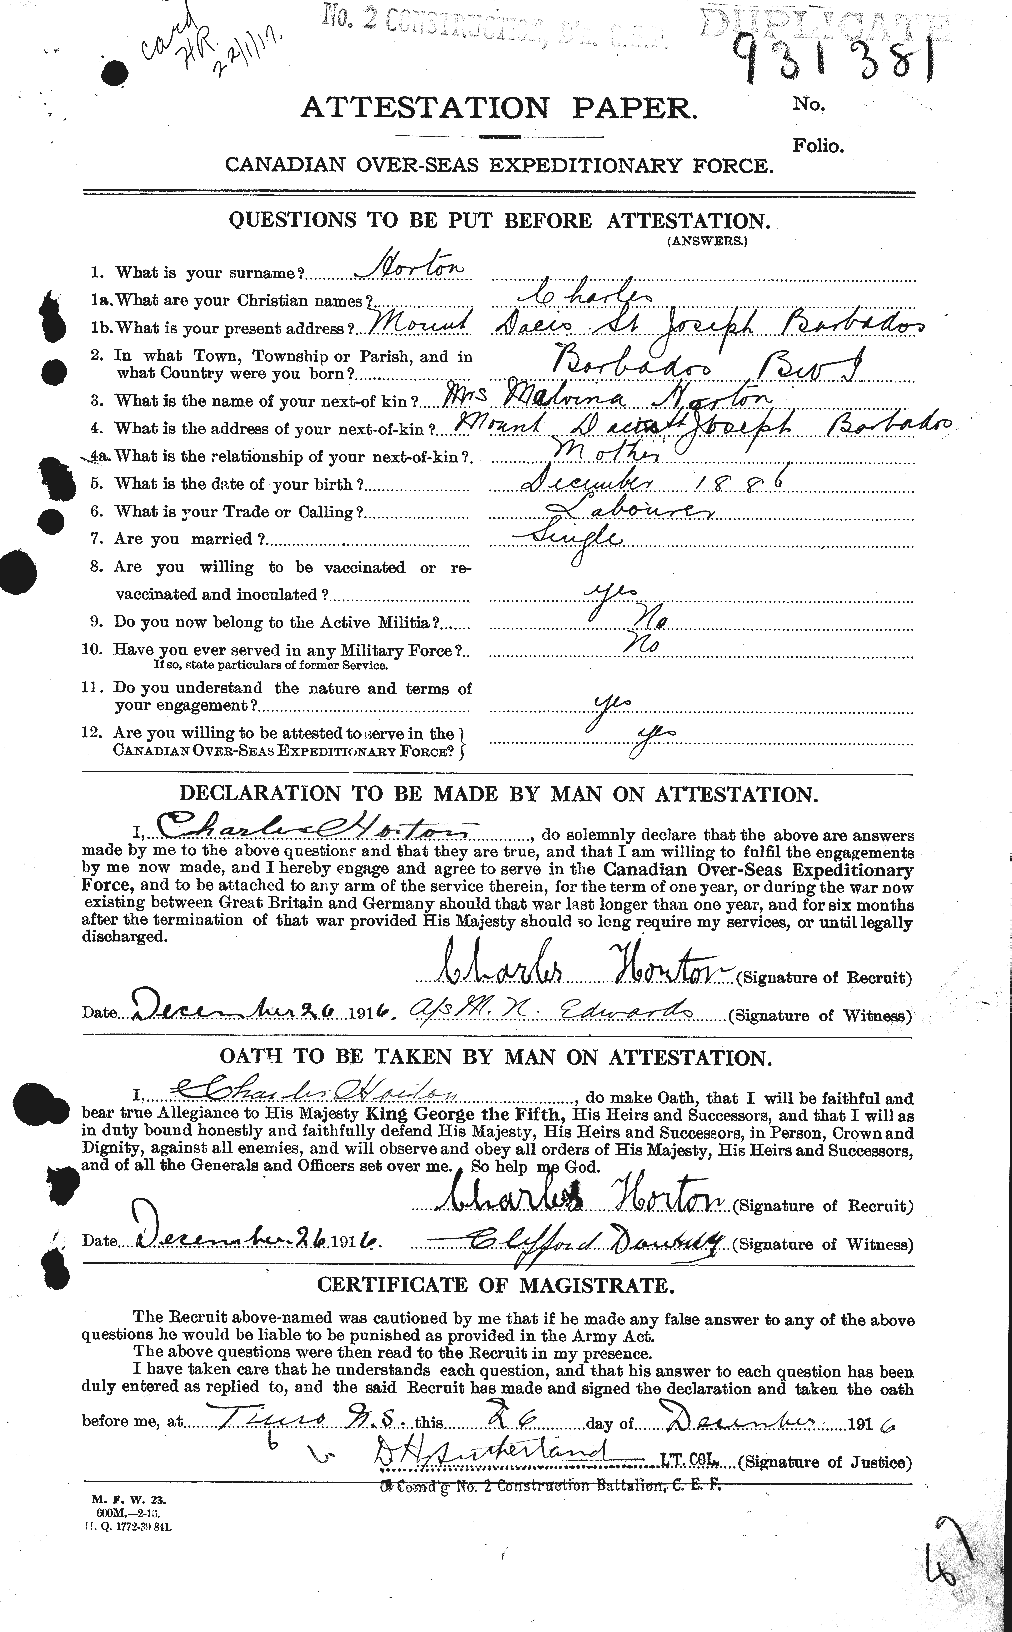 Dossiers du Personnel de la Première Guerre mondiale - CEC 399824a